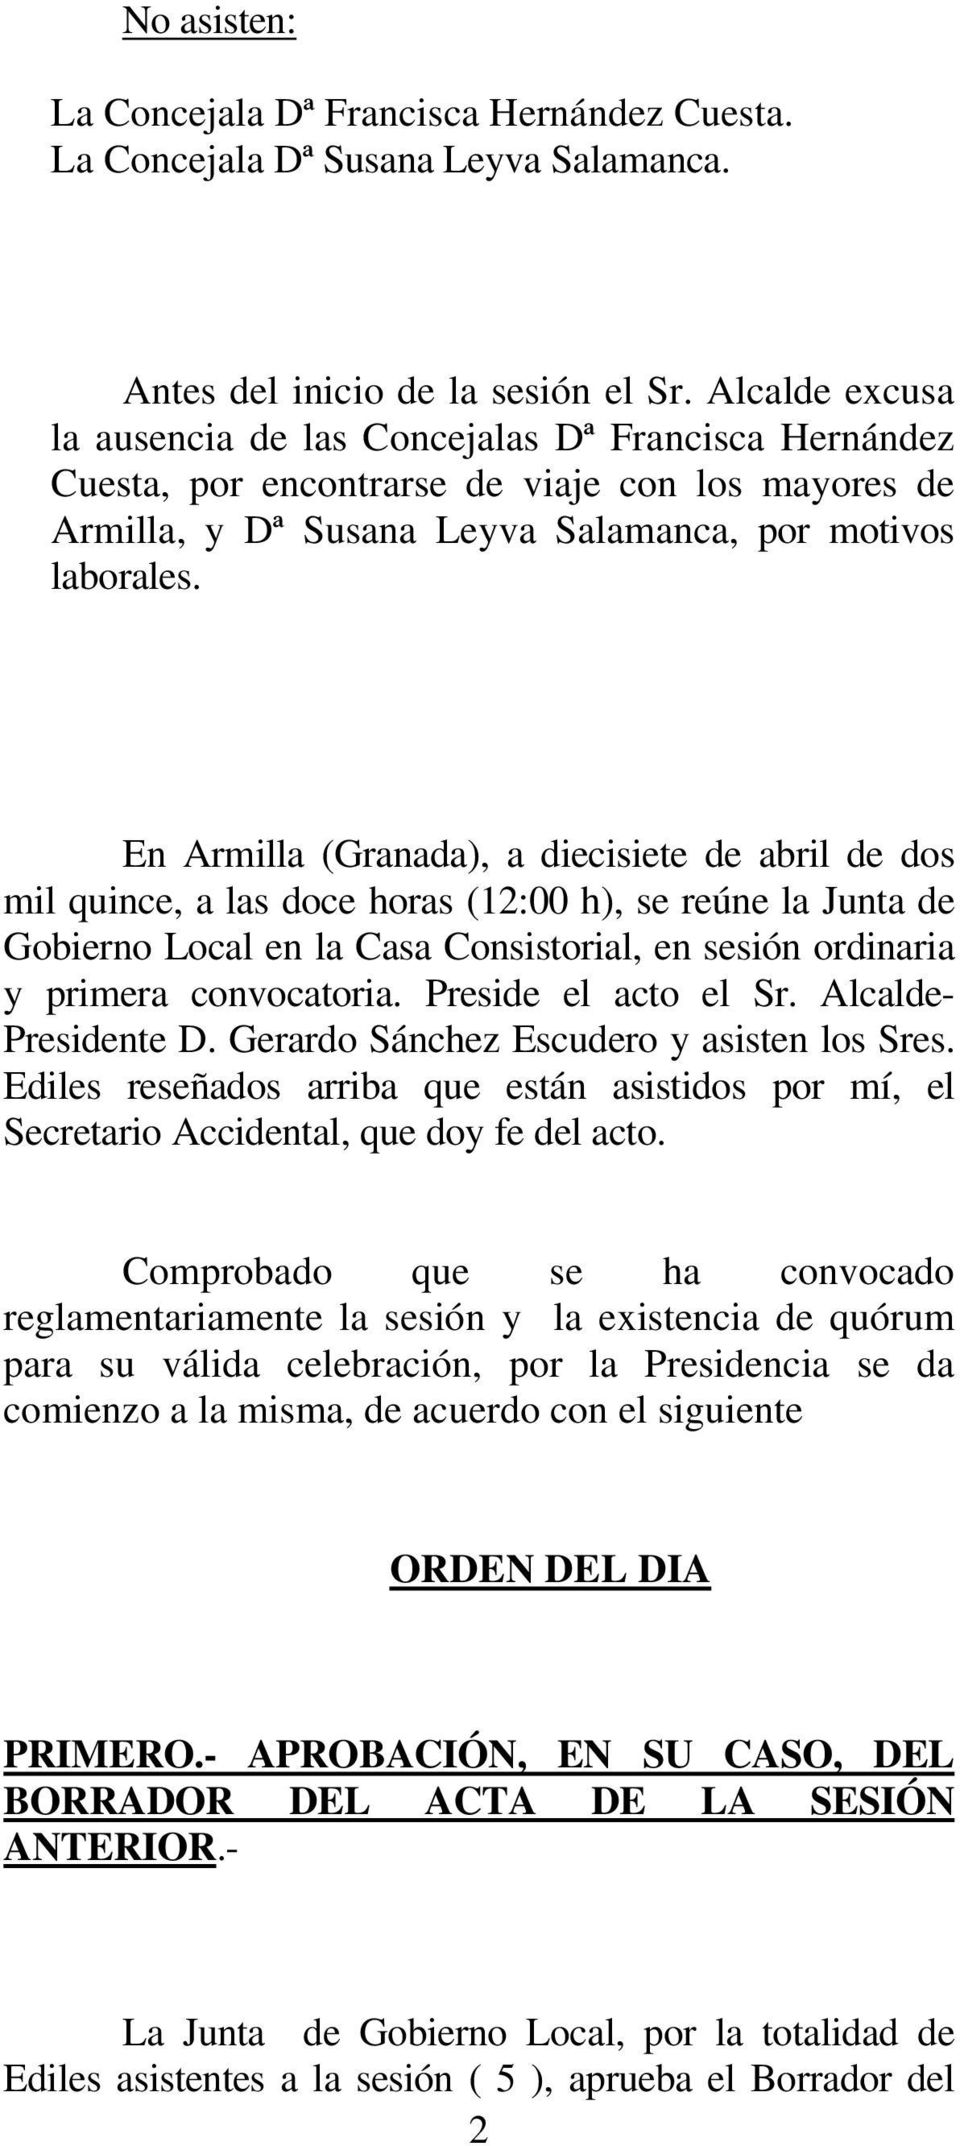 En Armilla (Granada), a diecisiete de abril de dos mil quince, a las doce horas (12:00 h), se reúne la Junta de Gobierno Local en la Casa Consistorial, en sesión ordinaria y primera convocatoria.